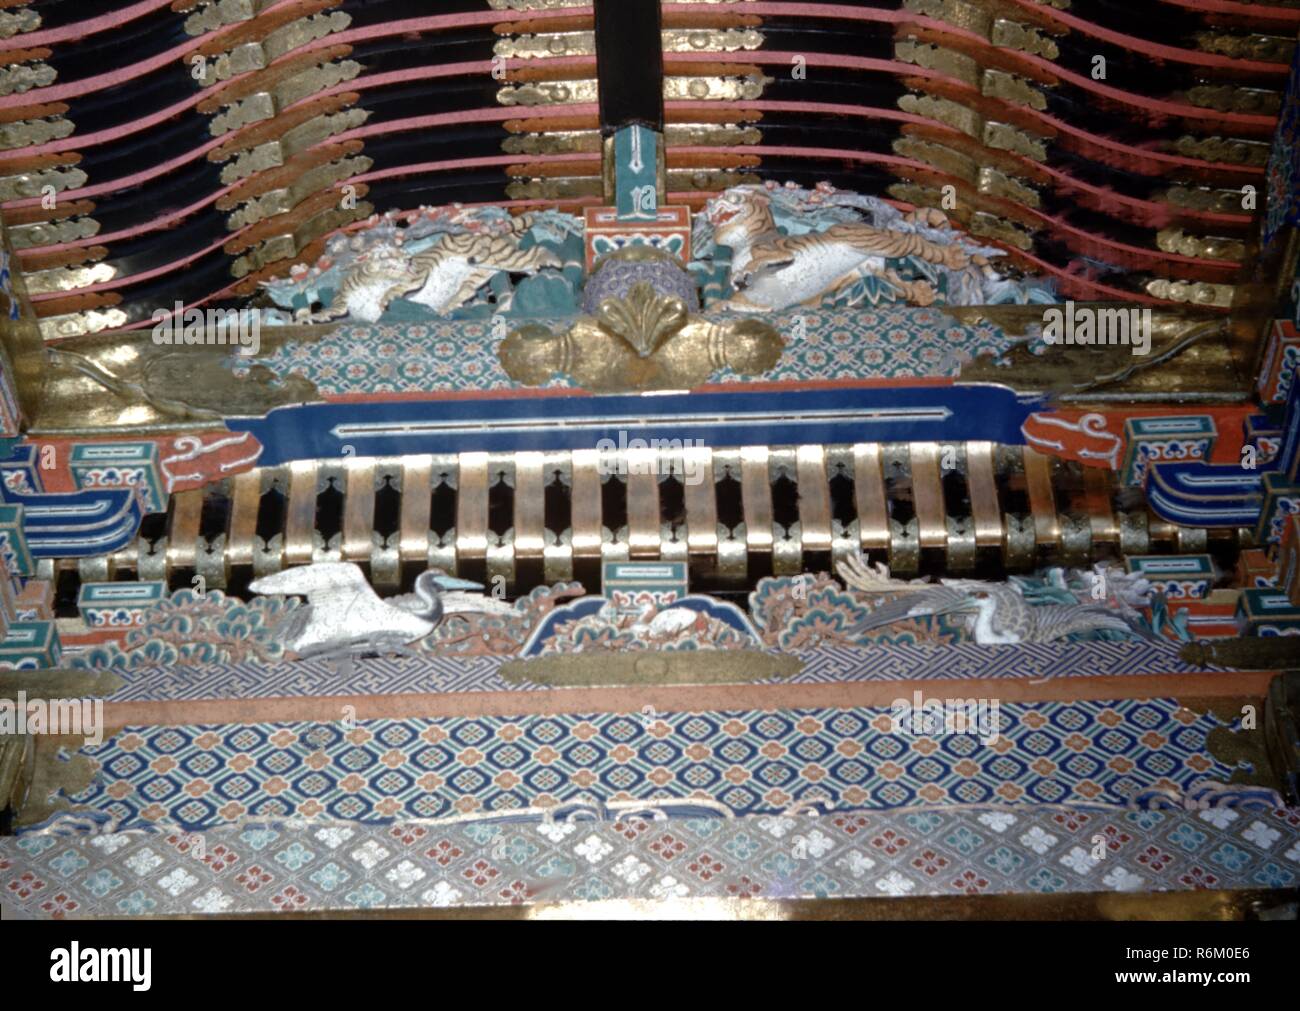 Photographie couleur, à partir d'un angle faible, montrant et finement détaillés, y compris les sculptures en bois peint des grues et des tigres, éventuellement à partir de l'avant-toit d'un culte à l'un des bâtiments dans le temple bouddhiste Nikk région, comme Nikk T sh -g ou Rinn -ji, probablement photographié au Japon au cours de la moitié du xxe siècle, 1965. () Banque D'Images